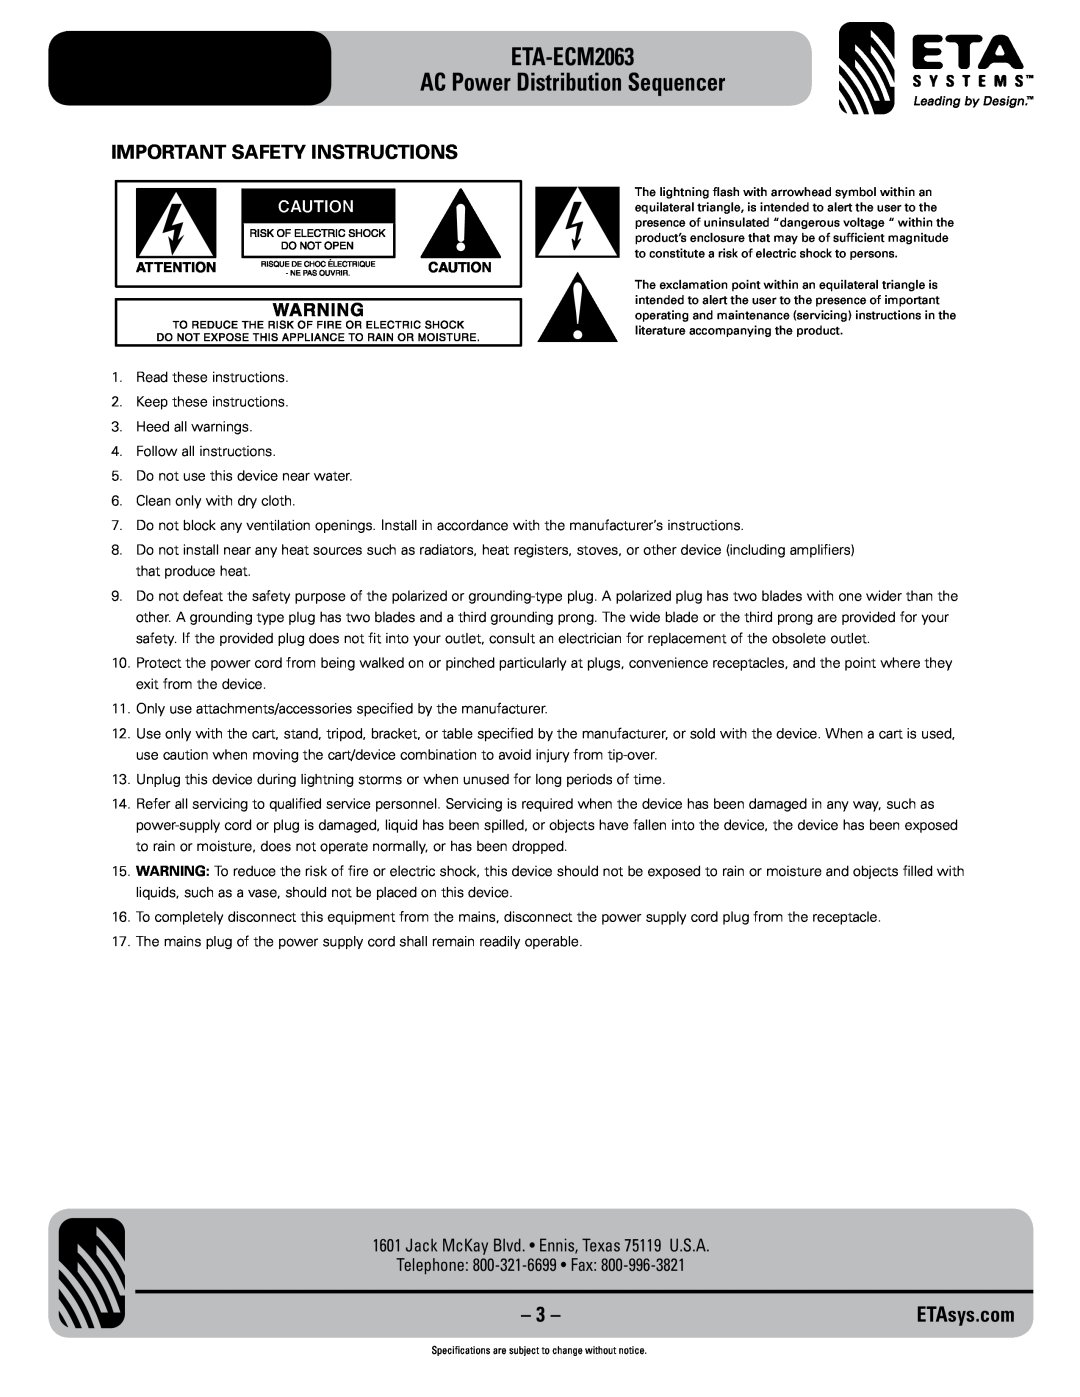 ETA Systems eta-ecm2063 Important Safety Instructions, ETA-ECM2063 AC Power Distribution Sequencer, ETAsys.com 